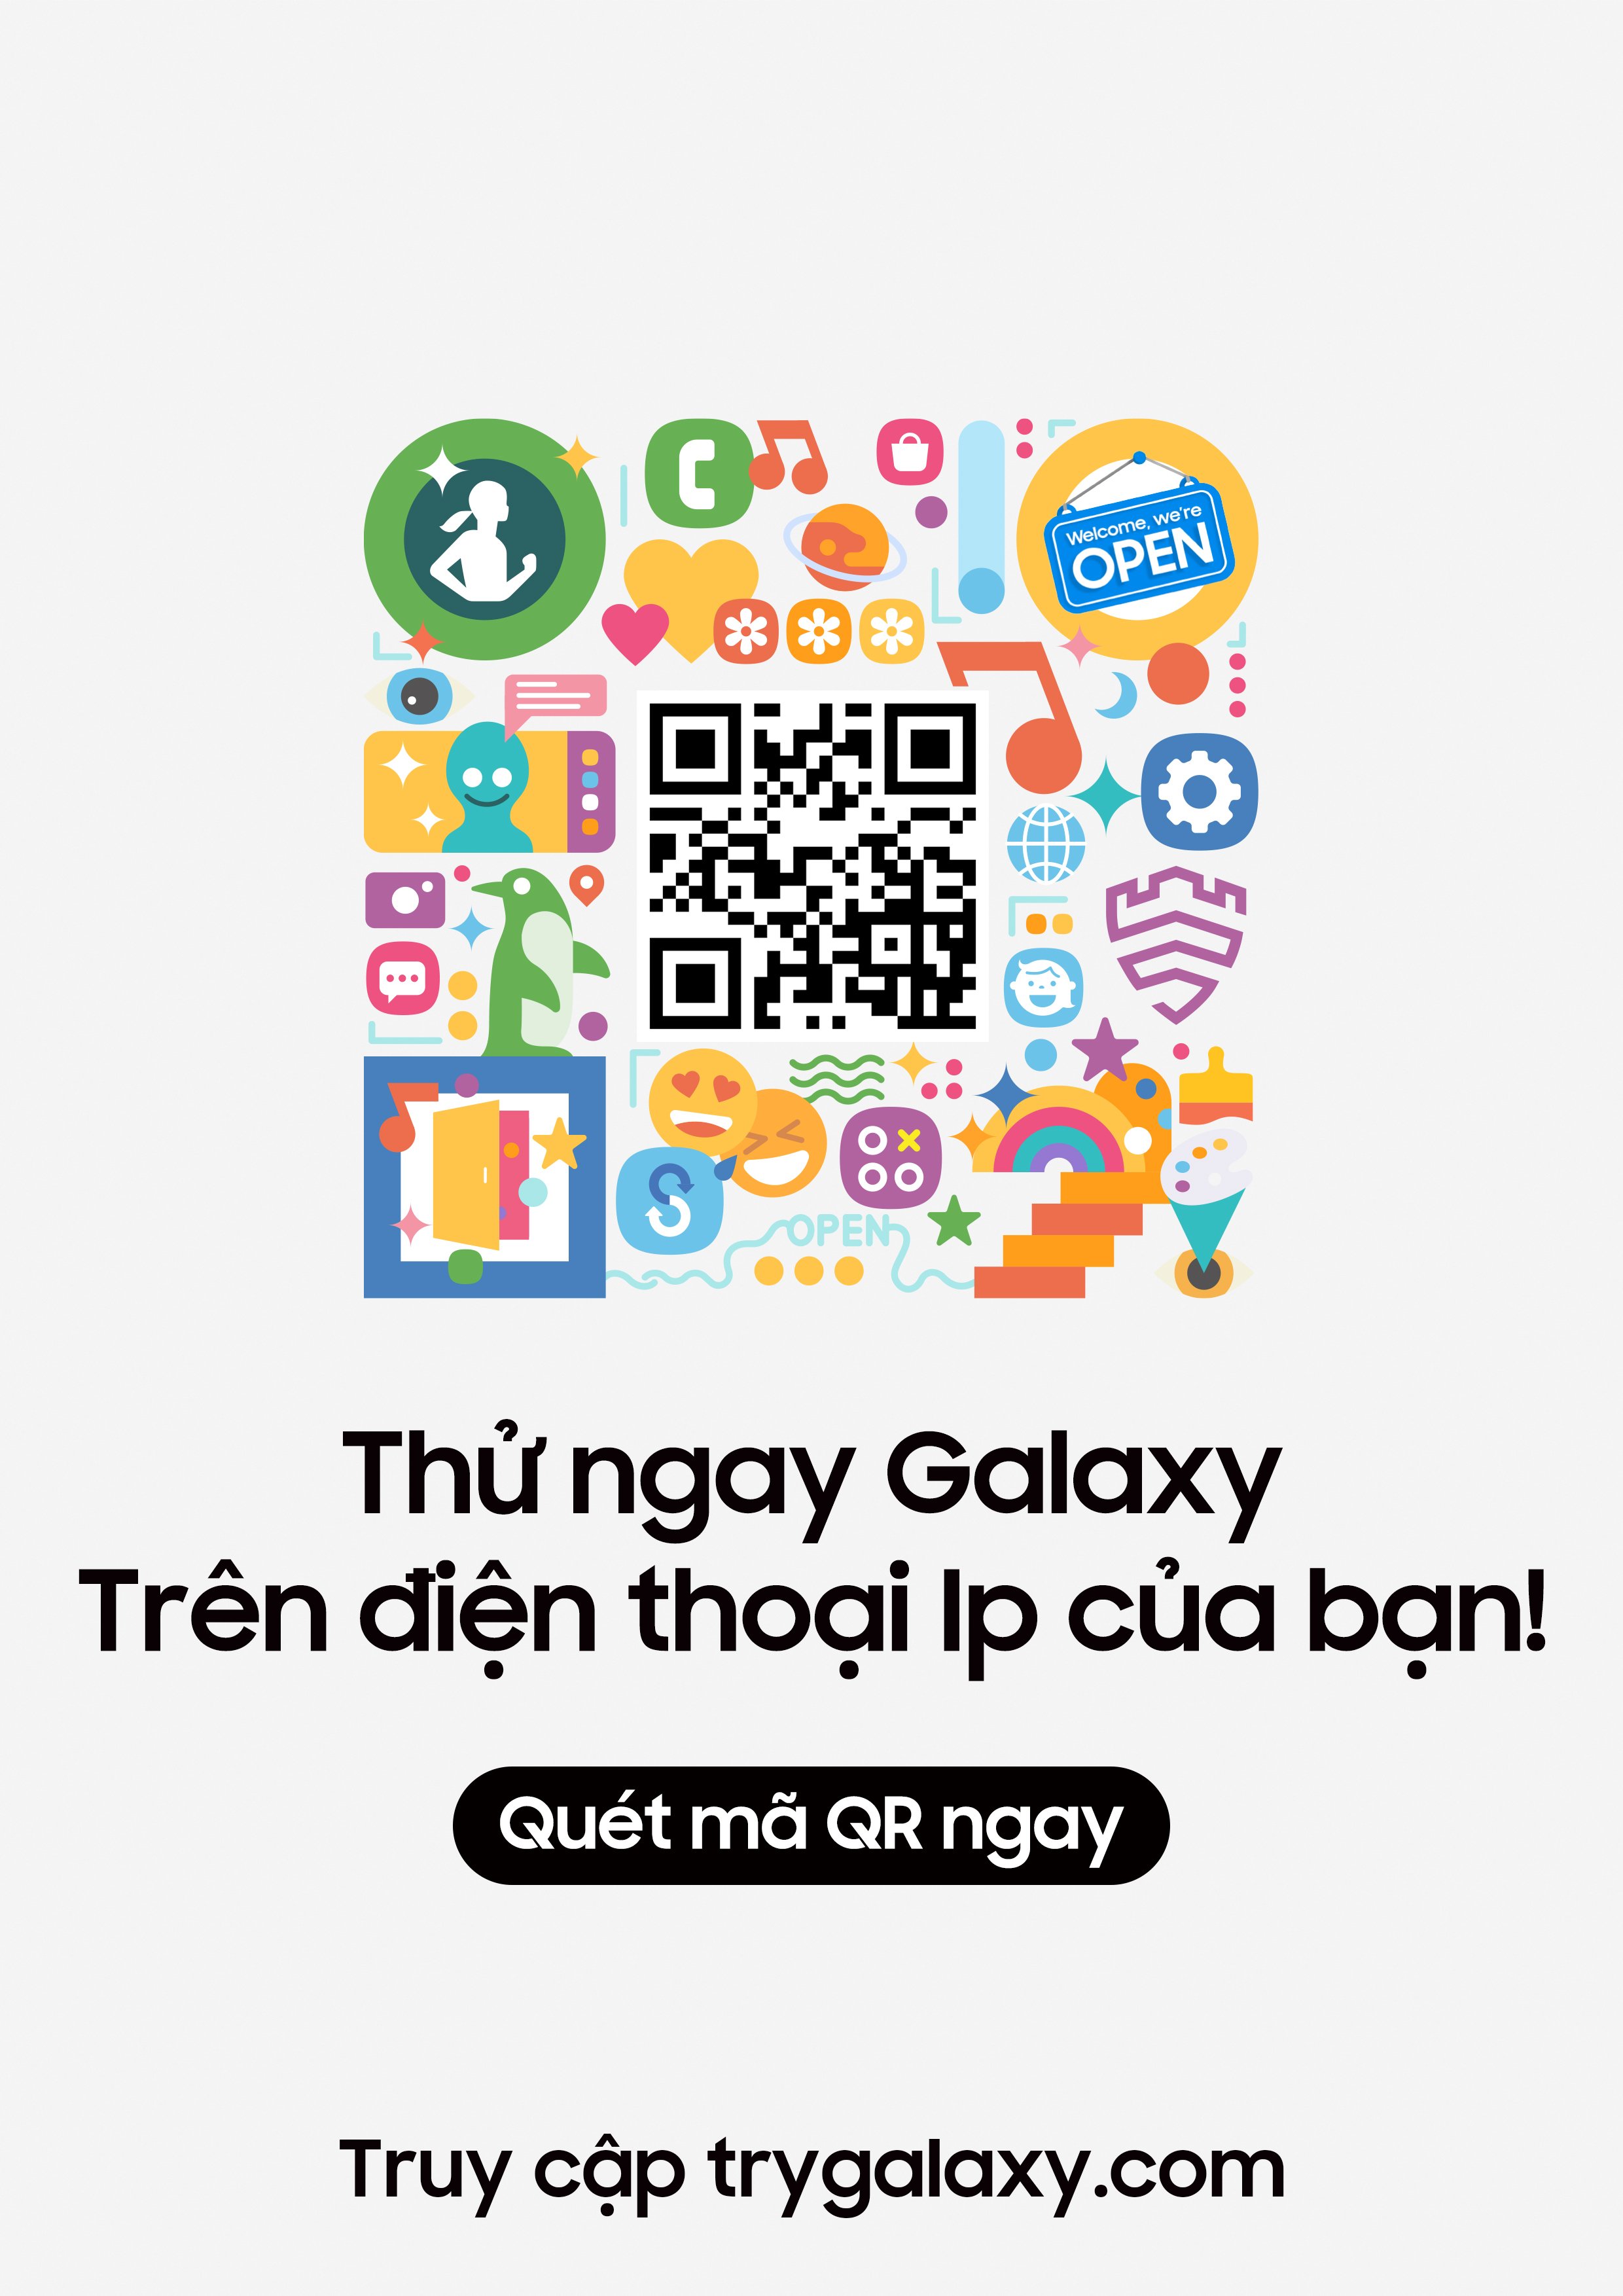 Ứng dụng Try Galaxy đổ bộ, iFan thử trải nghiệm tương tác với thiết bị Galaxy ngay trên iPhone - 1